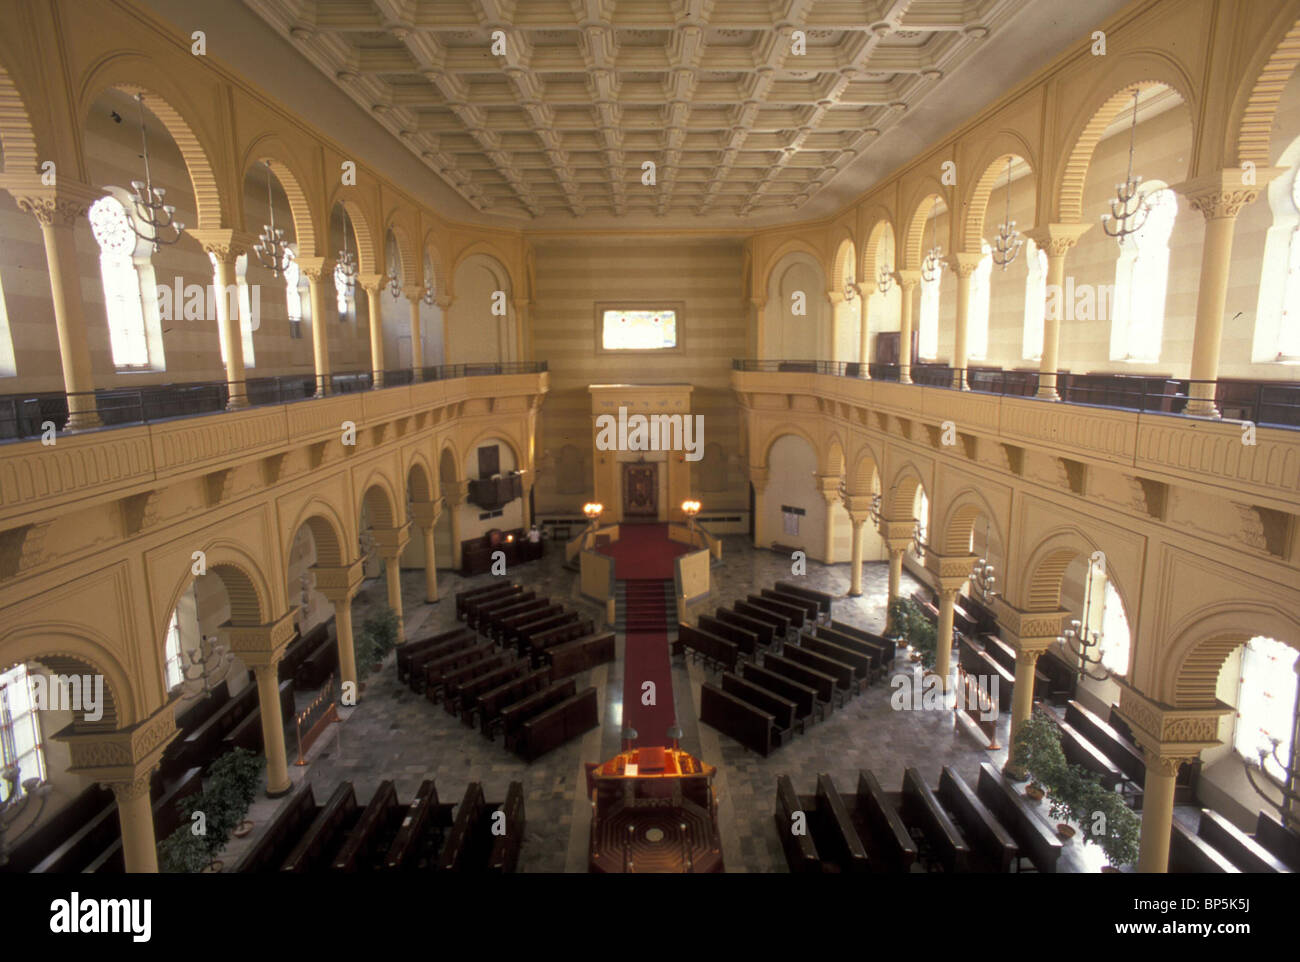 4625. La grande synagogue de Turin (Italie) Banque D'Images